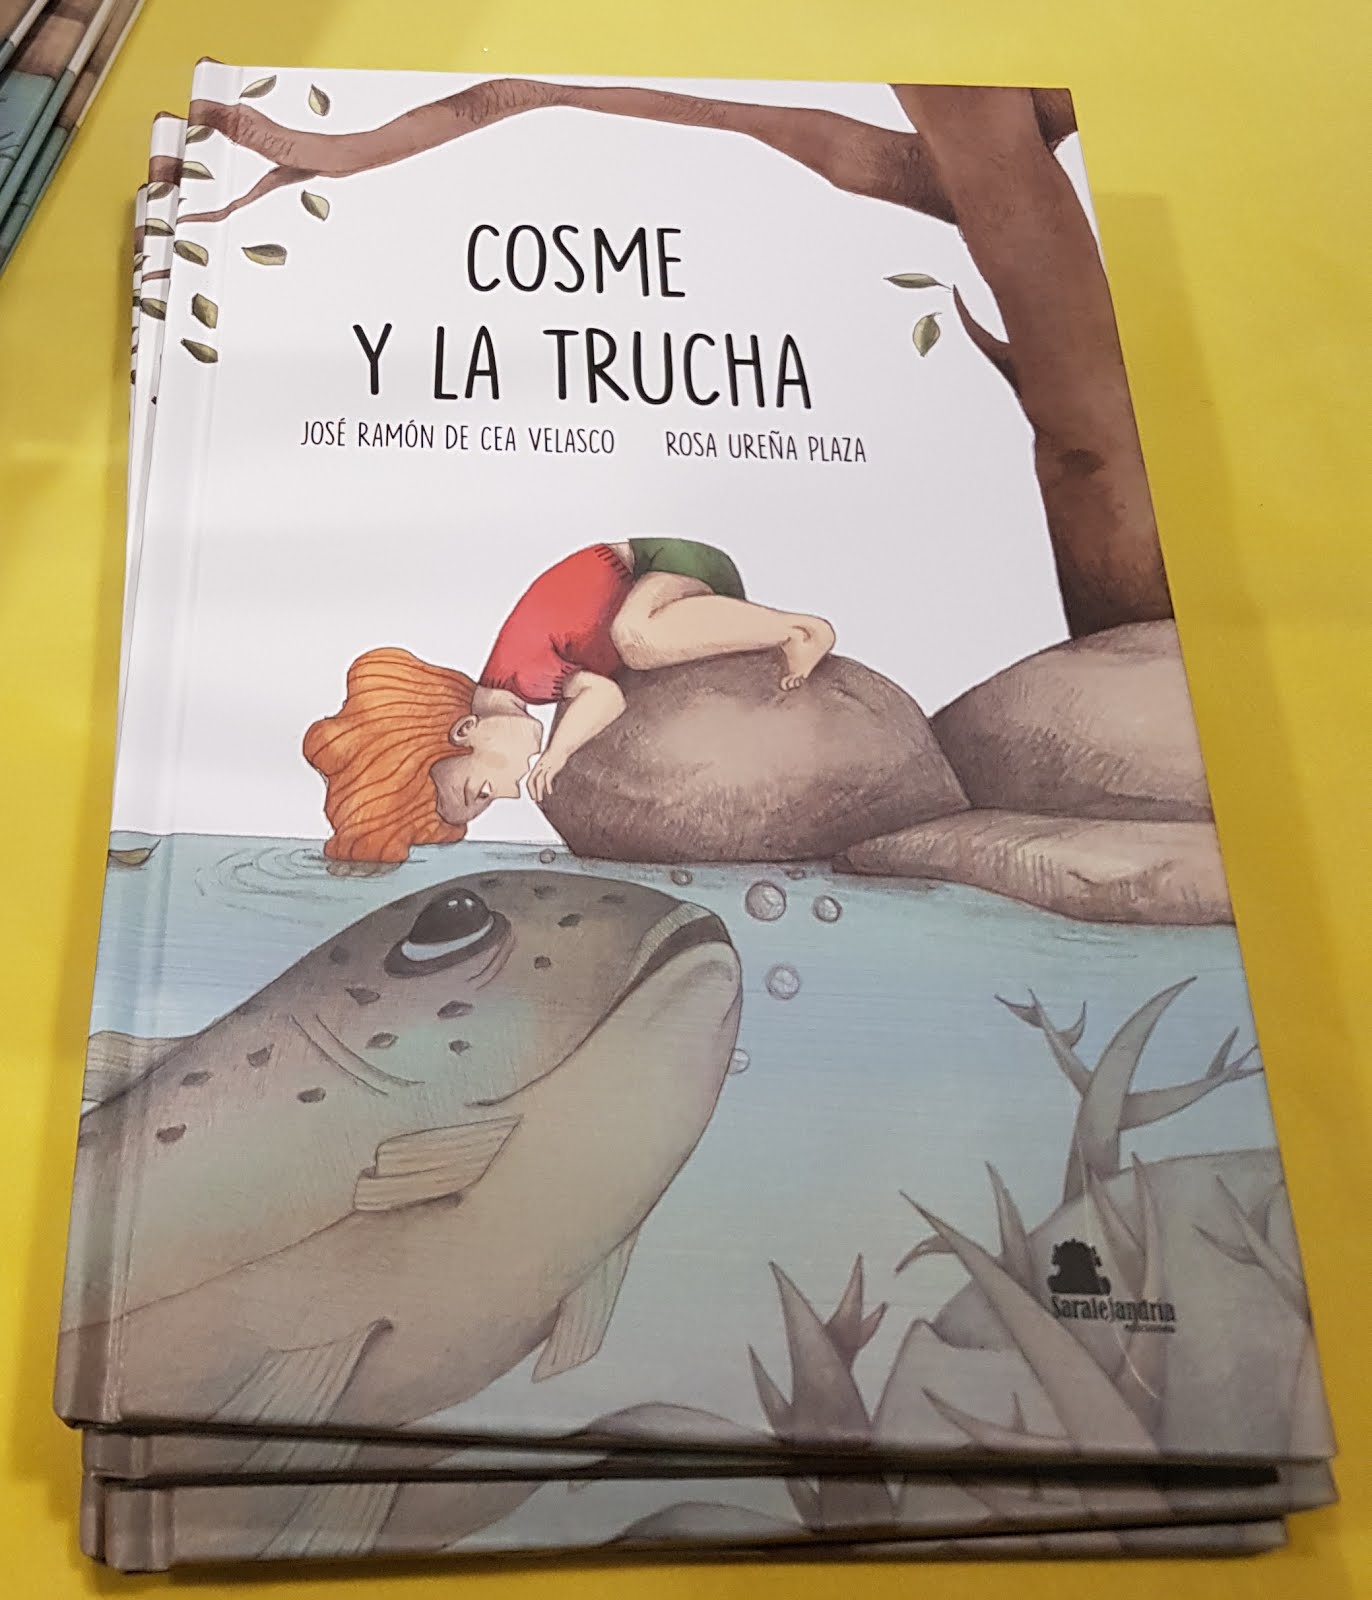 "COSME Y LA TRUCHA"